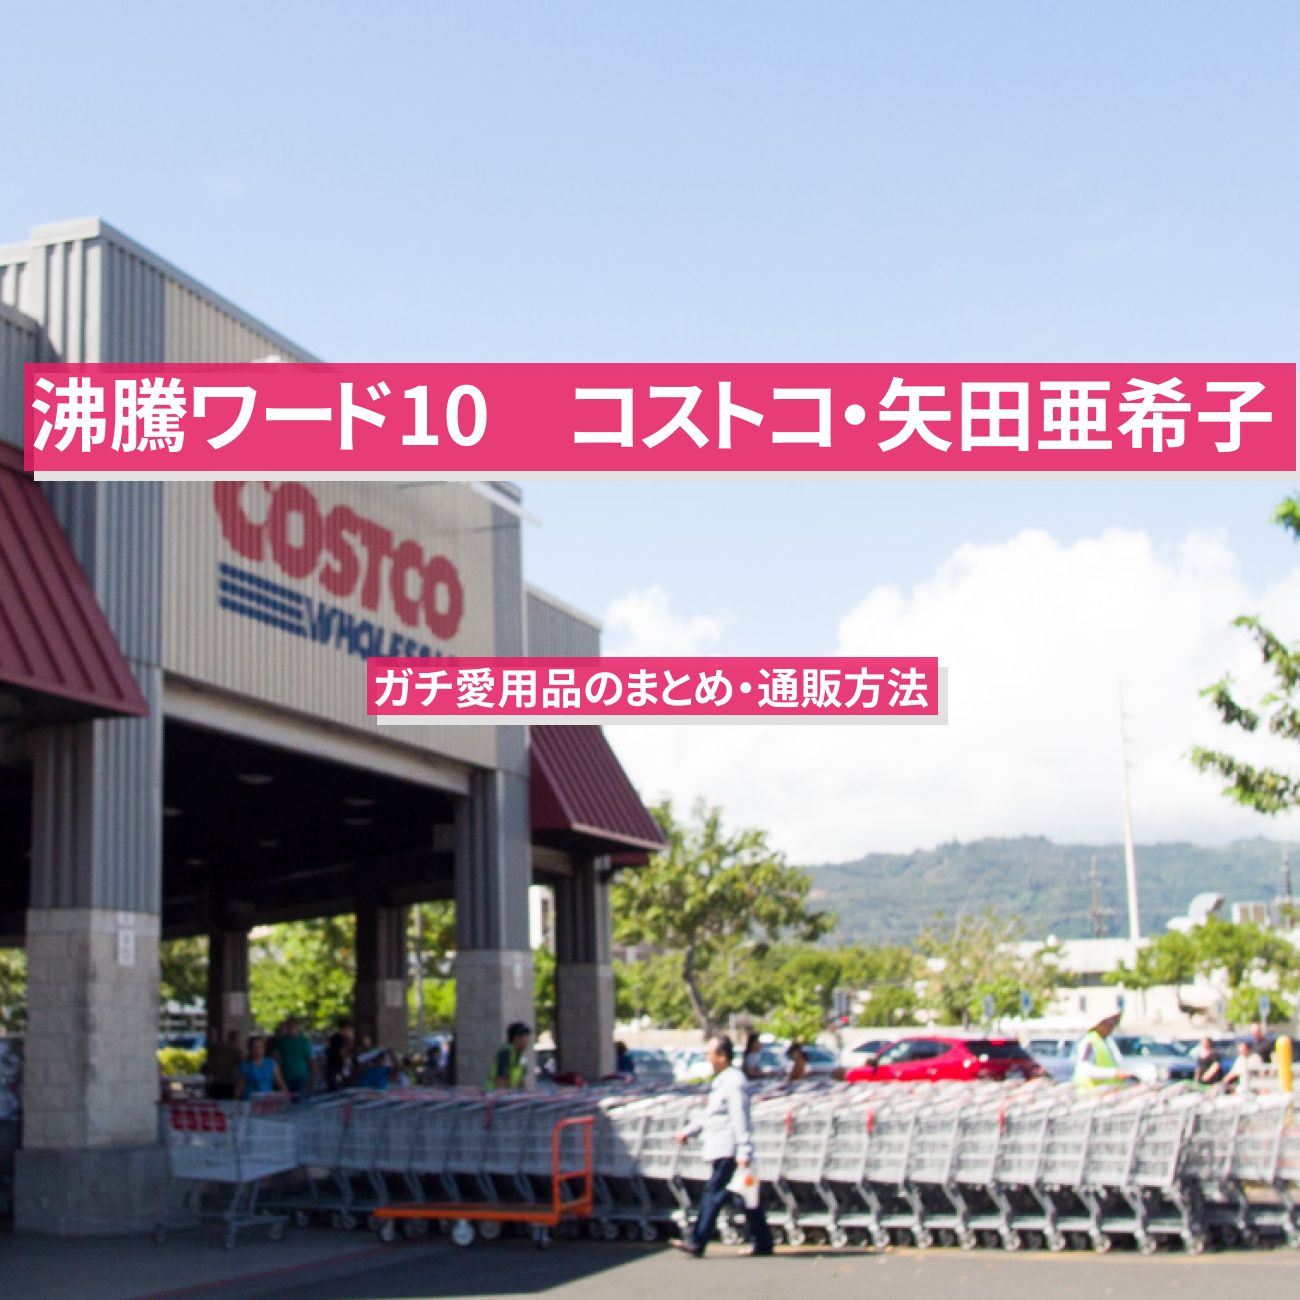 【沸騰ワード10】コストコ・矢田亜希子のガチ愛用品のまとめ・通販方法